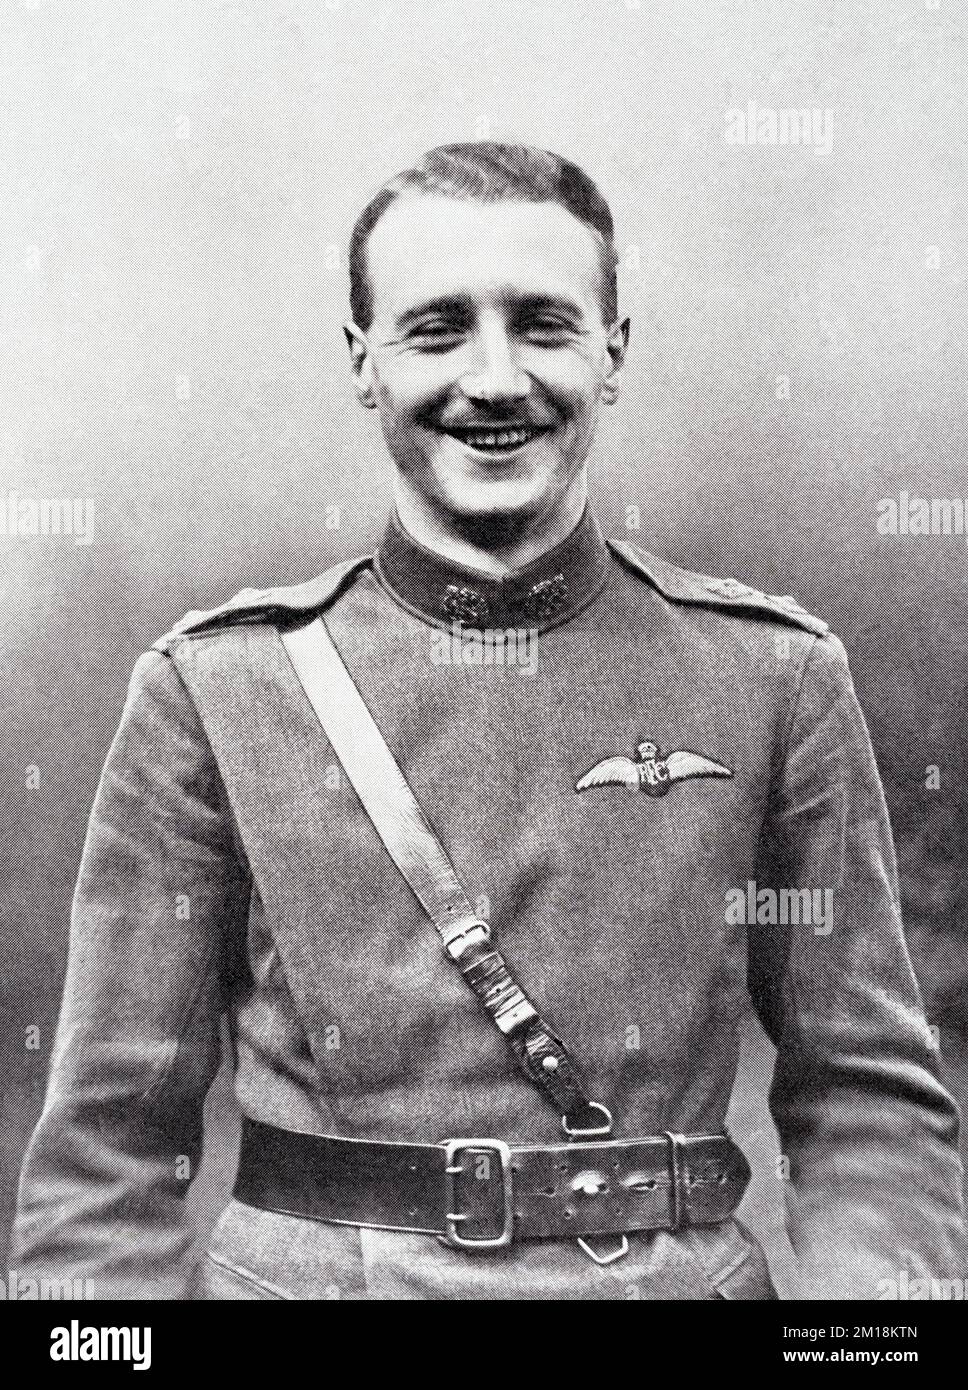 Le lieutenant Leefe Robinson de la Royal Flying Crops, qui a gagné une Croix de Victoria pendant la première Guerre mondiale pour avoir été le premier à abattre un navire aérien allemand au-dessus de la Grande-Bretagne, vers 1916. Banque D'Images